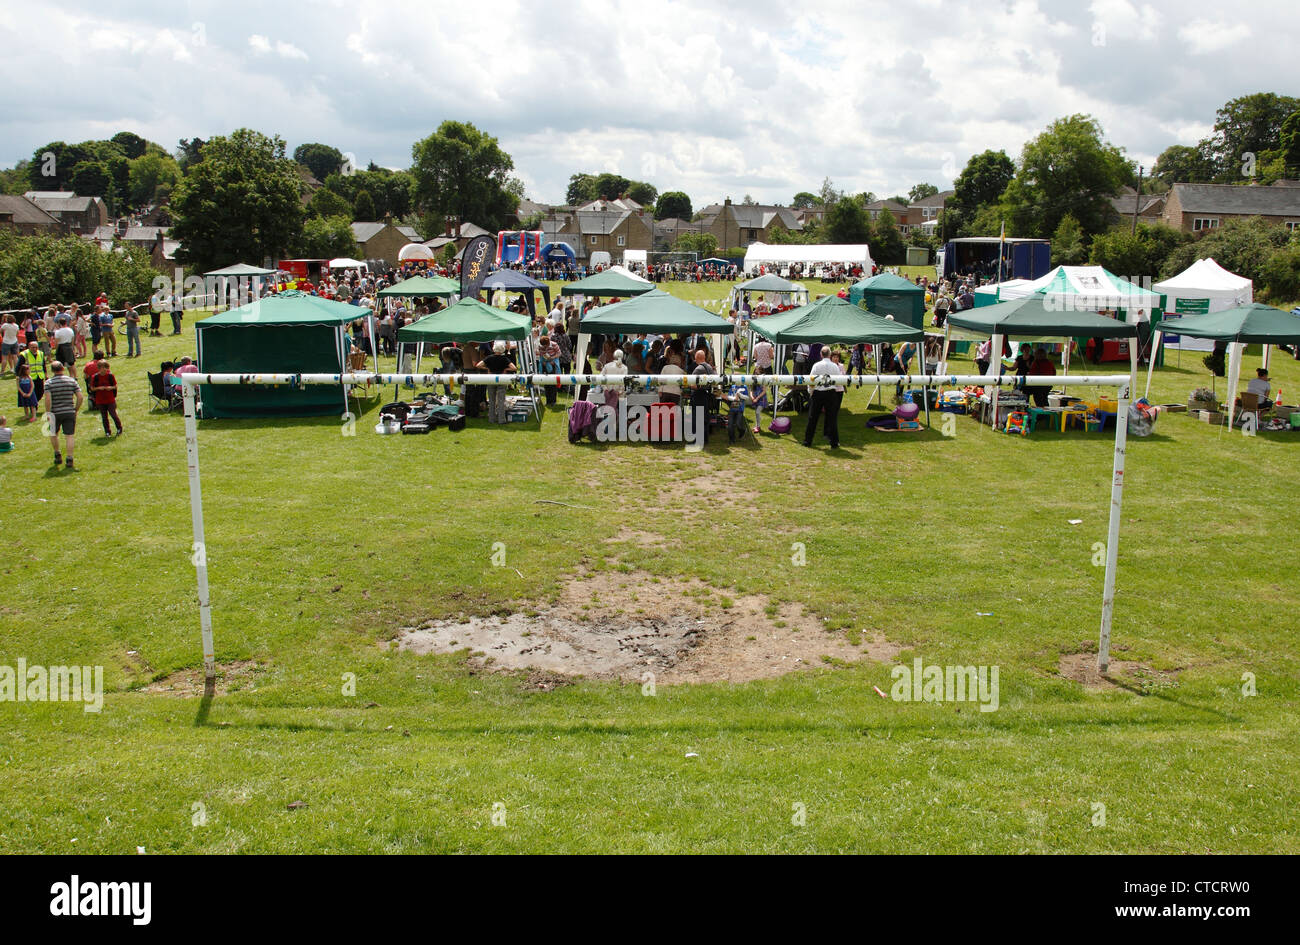 Une fête du village sur un terrain de football dans le Derbyshire, Angleterre, Royaume-Uni Banque D'Images